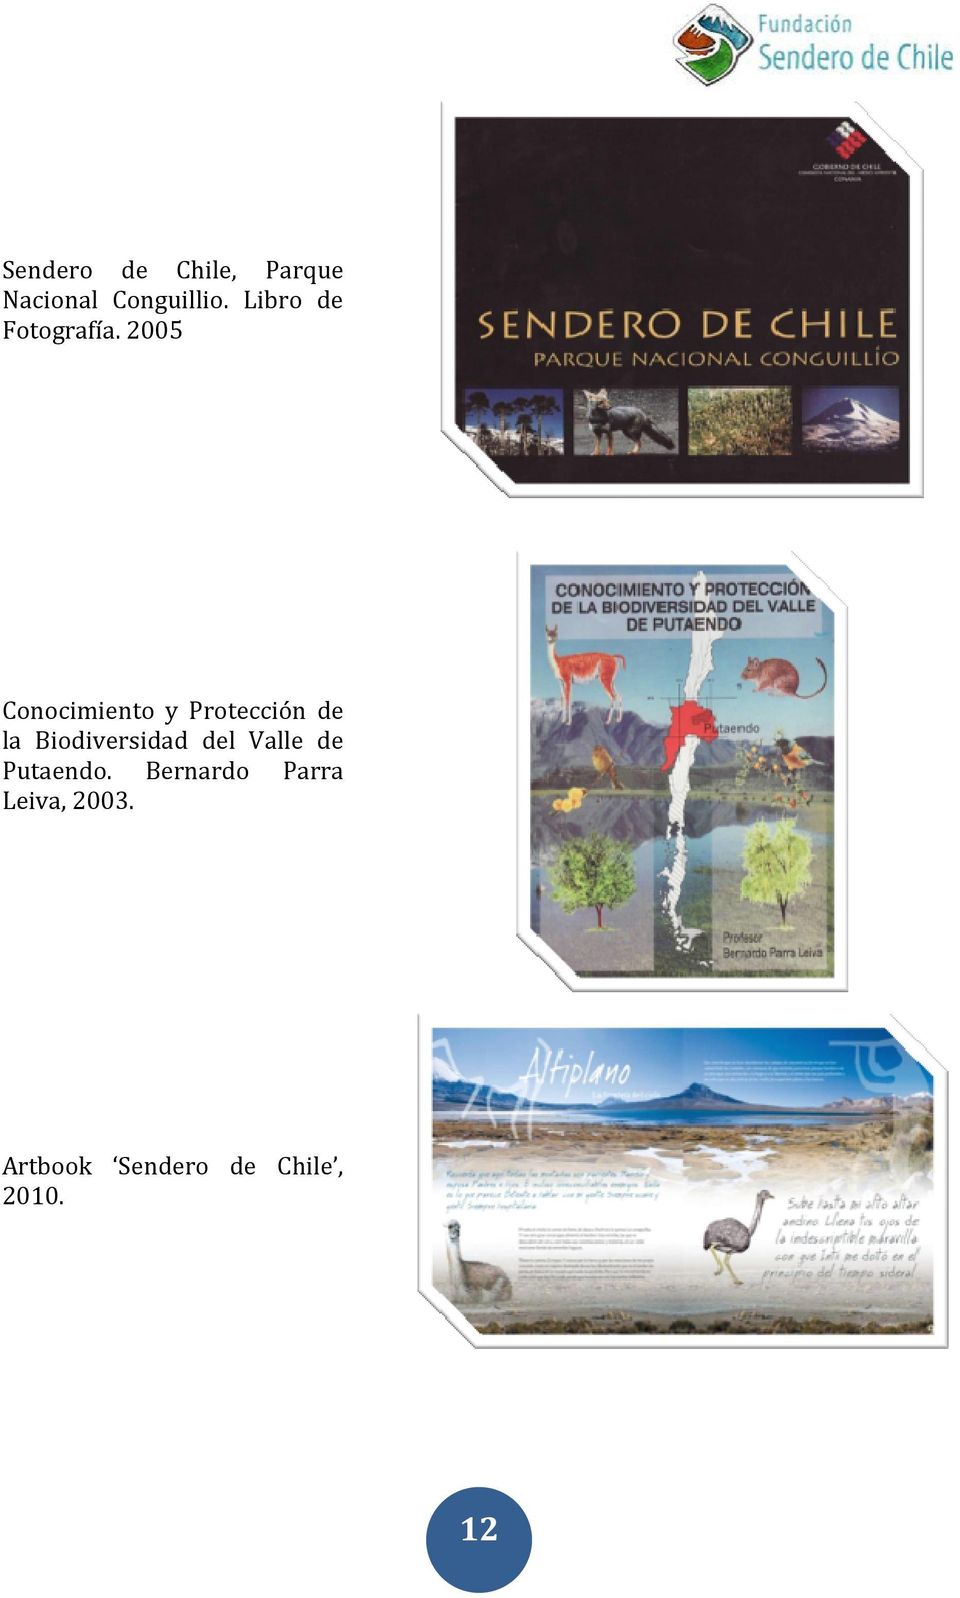 2005 Conocimiento y Protección de la Biodiversidad